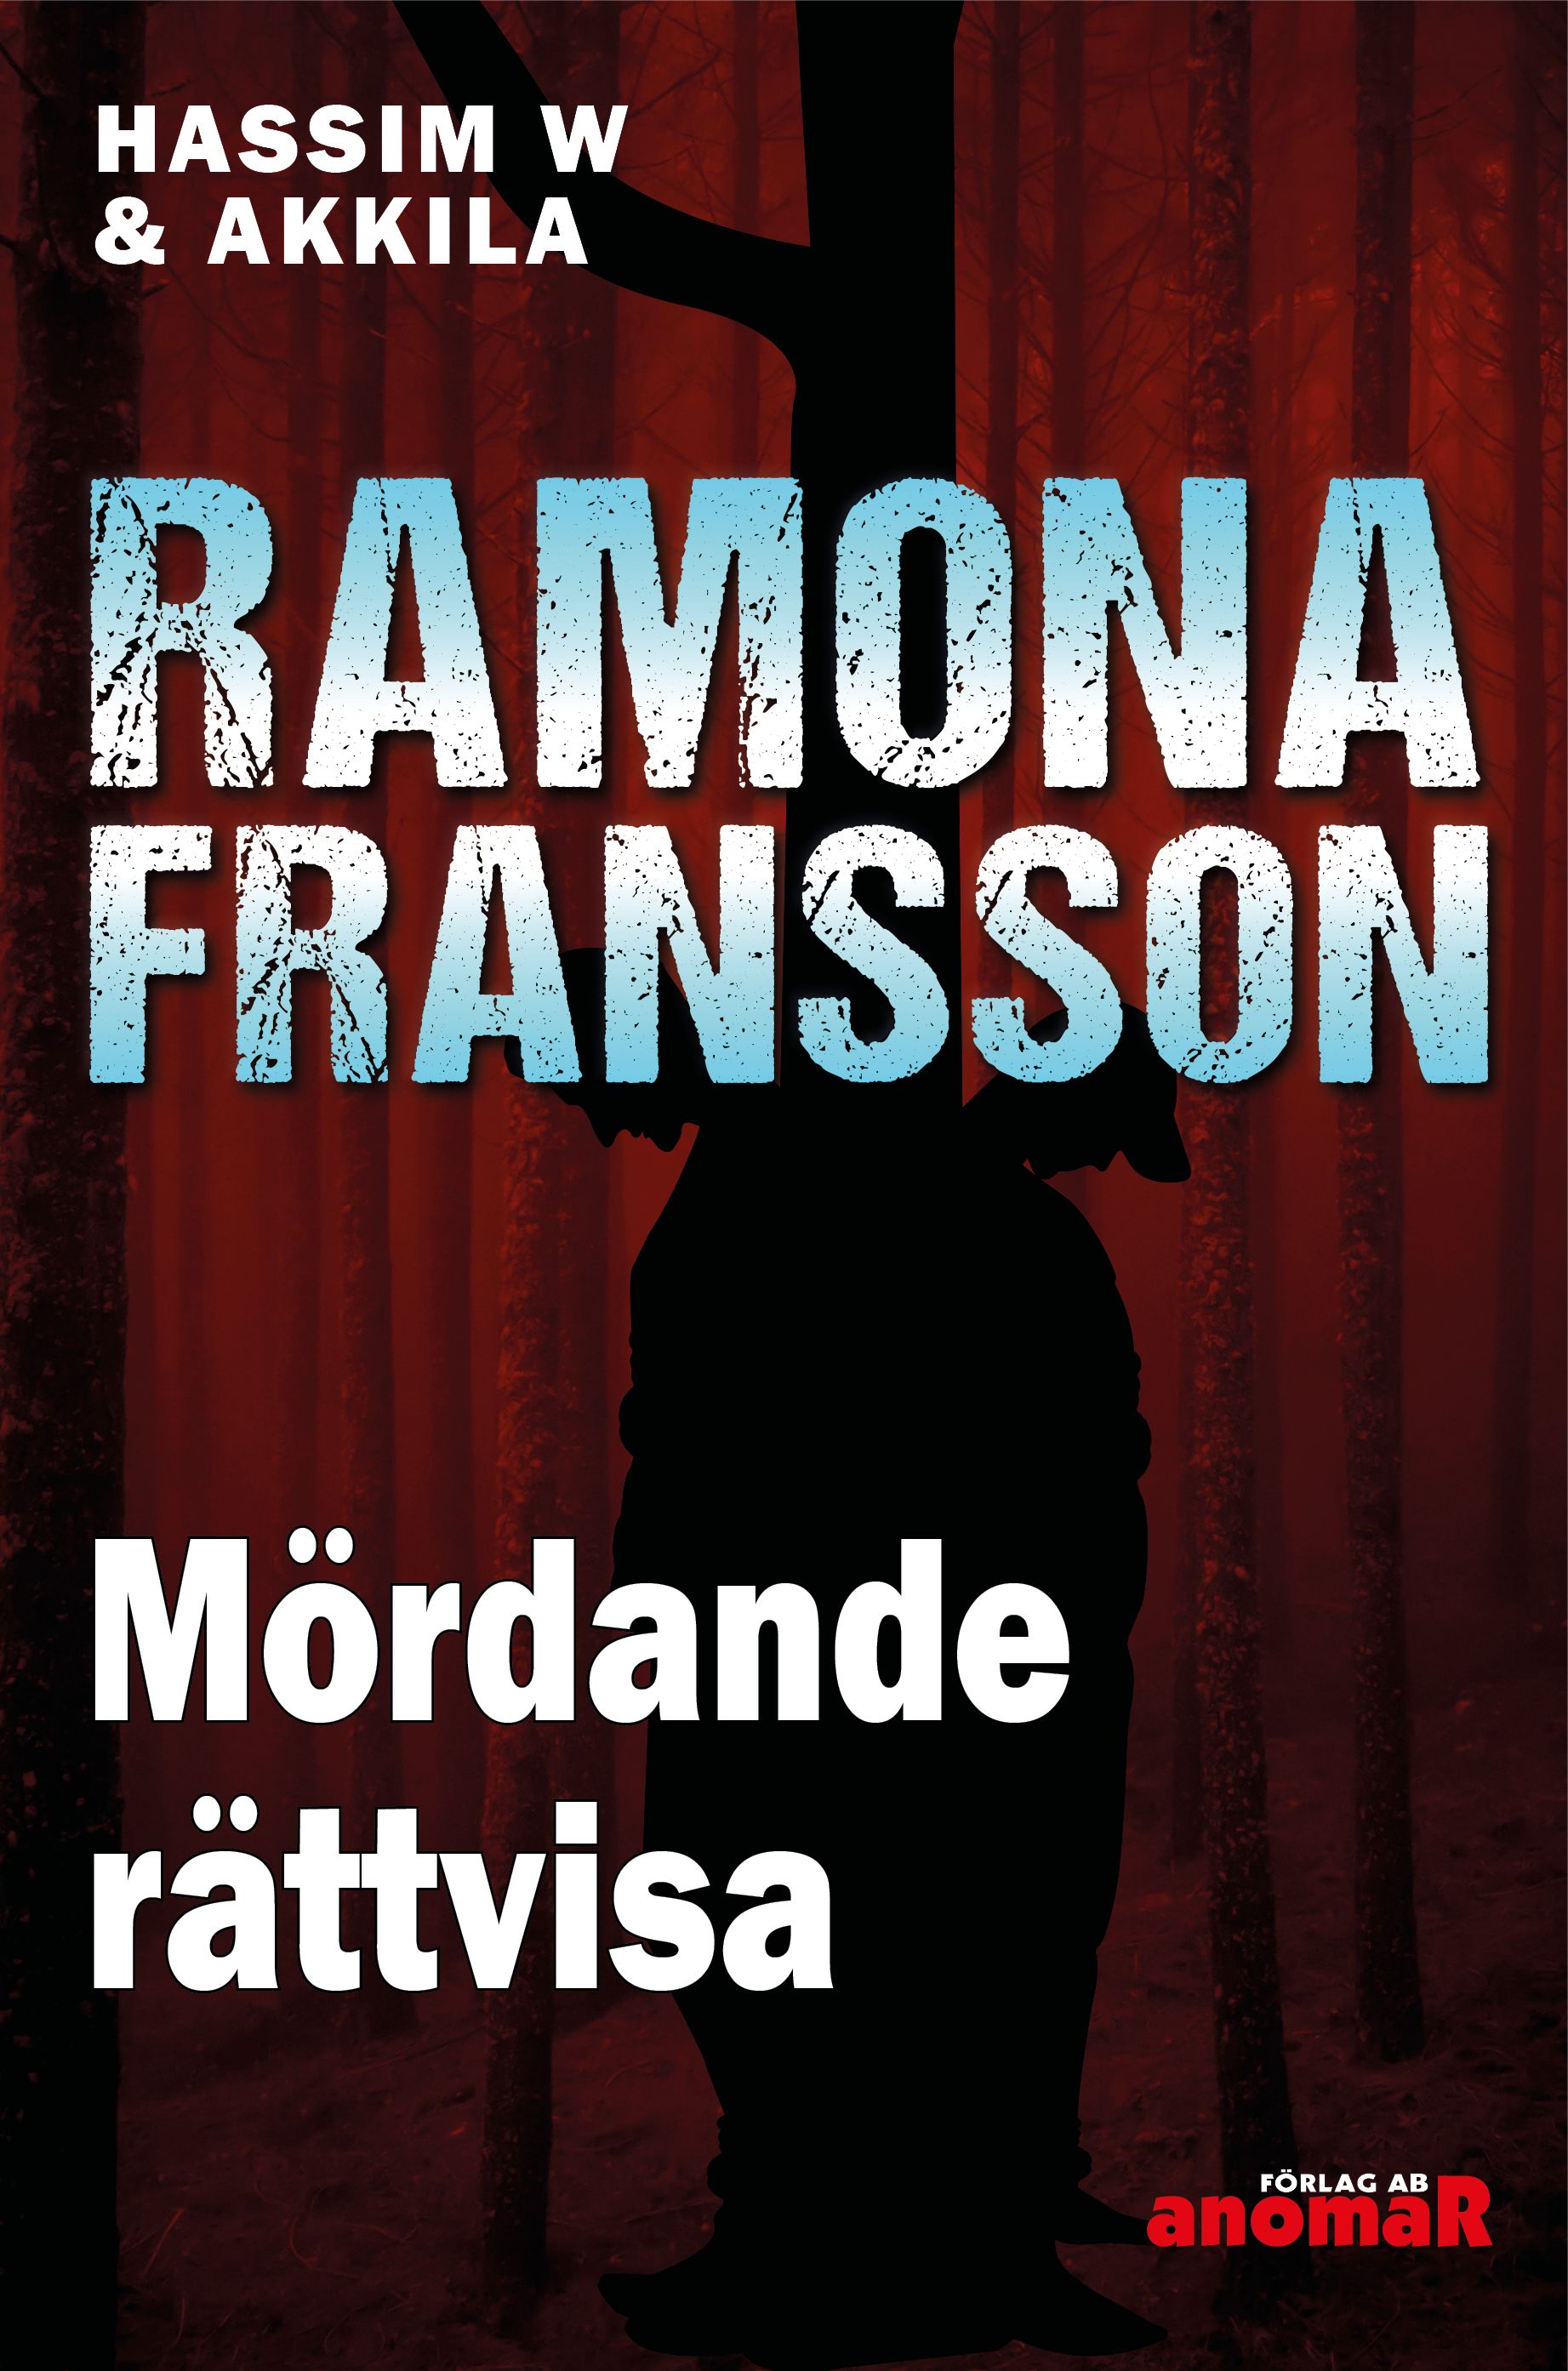 HW & Akkila, Mördande rättvisa, e-bok av Ramona Fransson